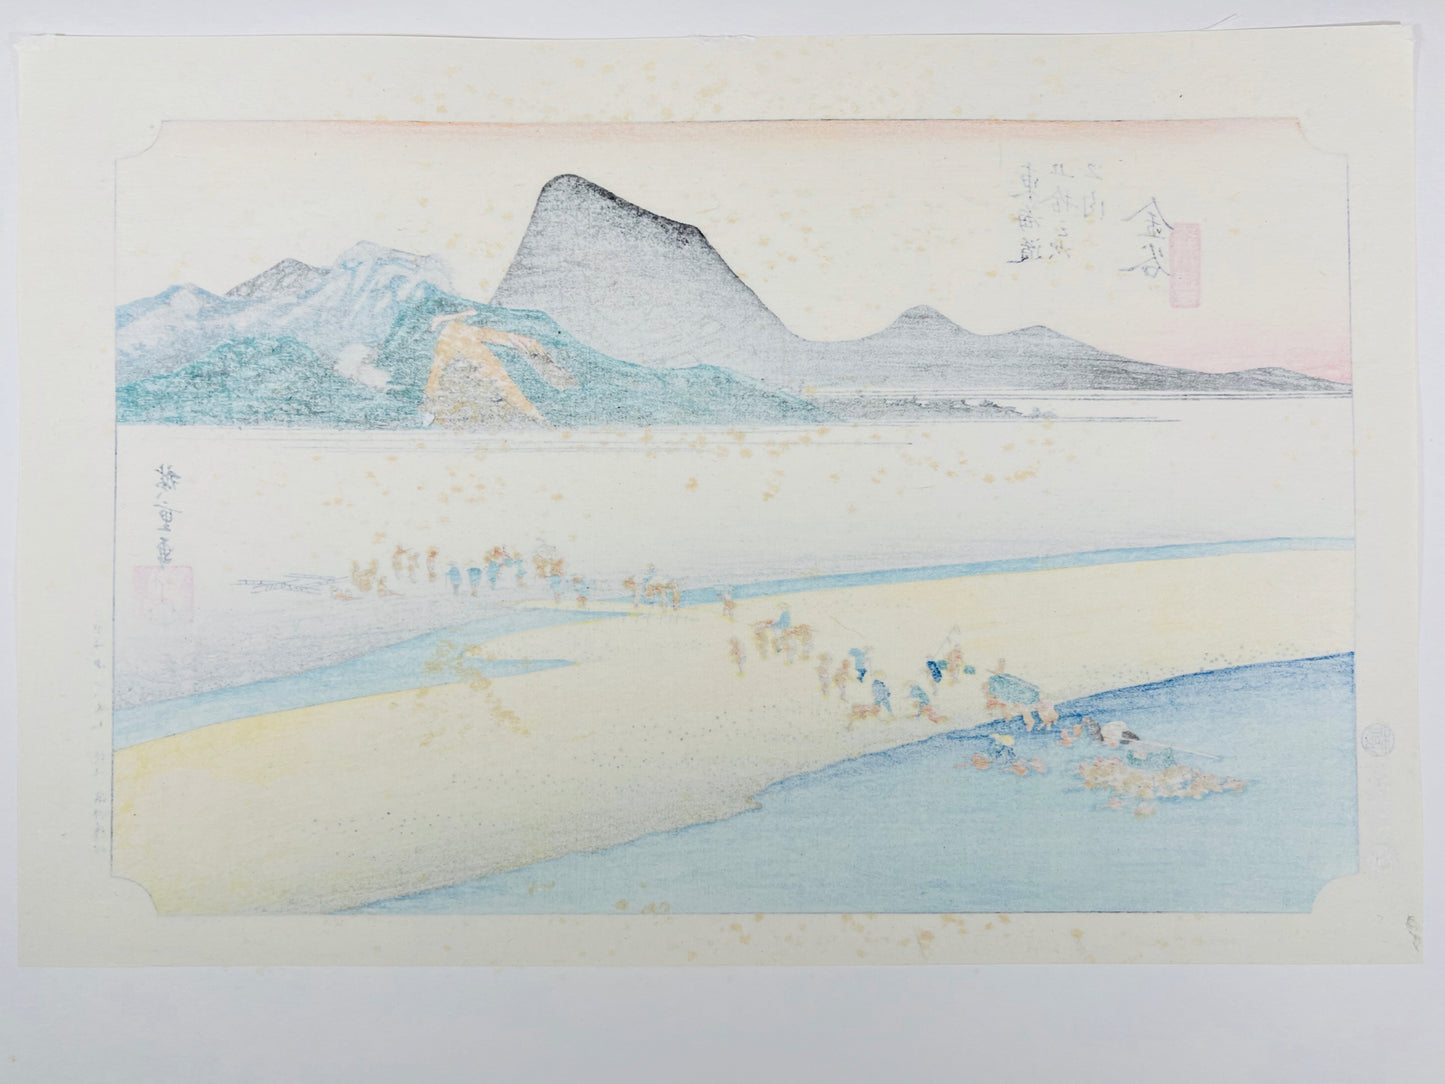 estampe japonaise de Hiroshige, des voyageurs traversent la rivière à gué à l'aide de porteurs, dos de l'estampe